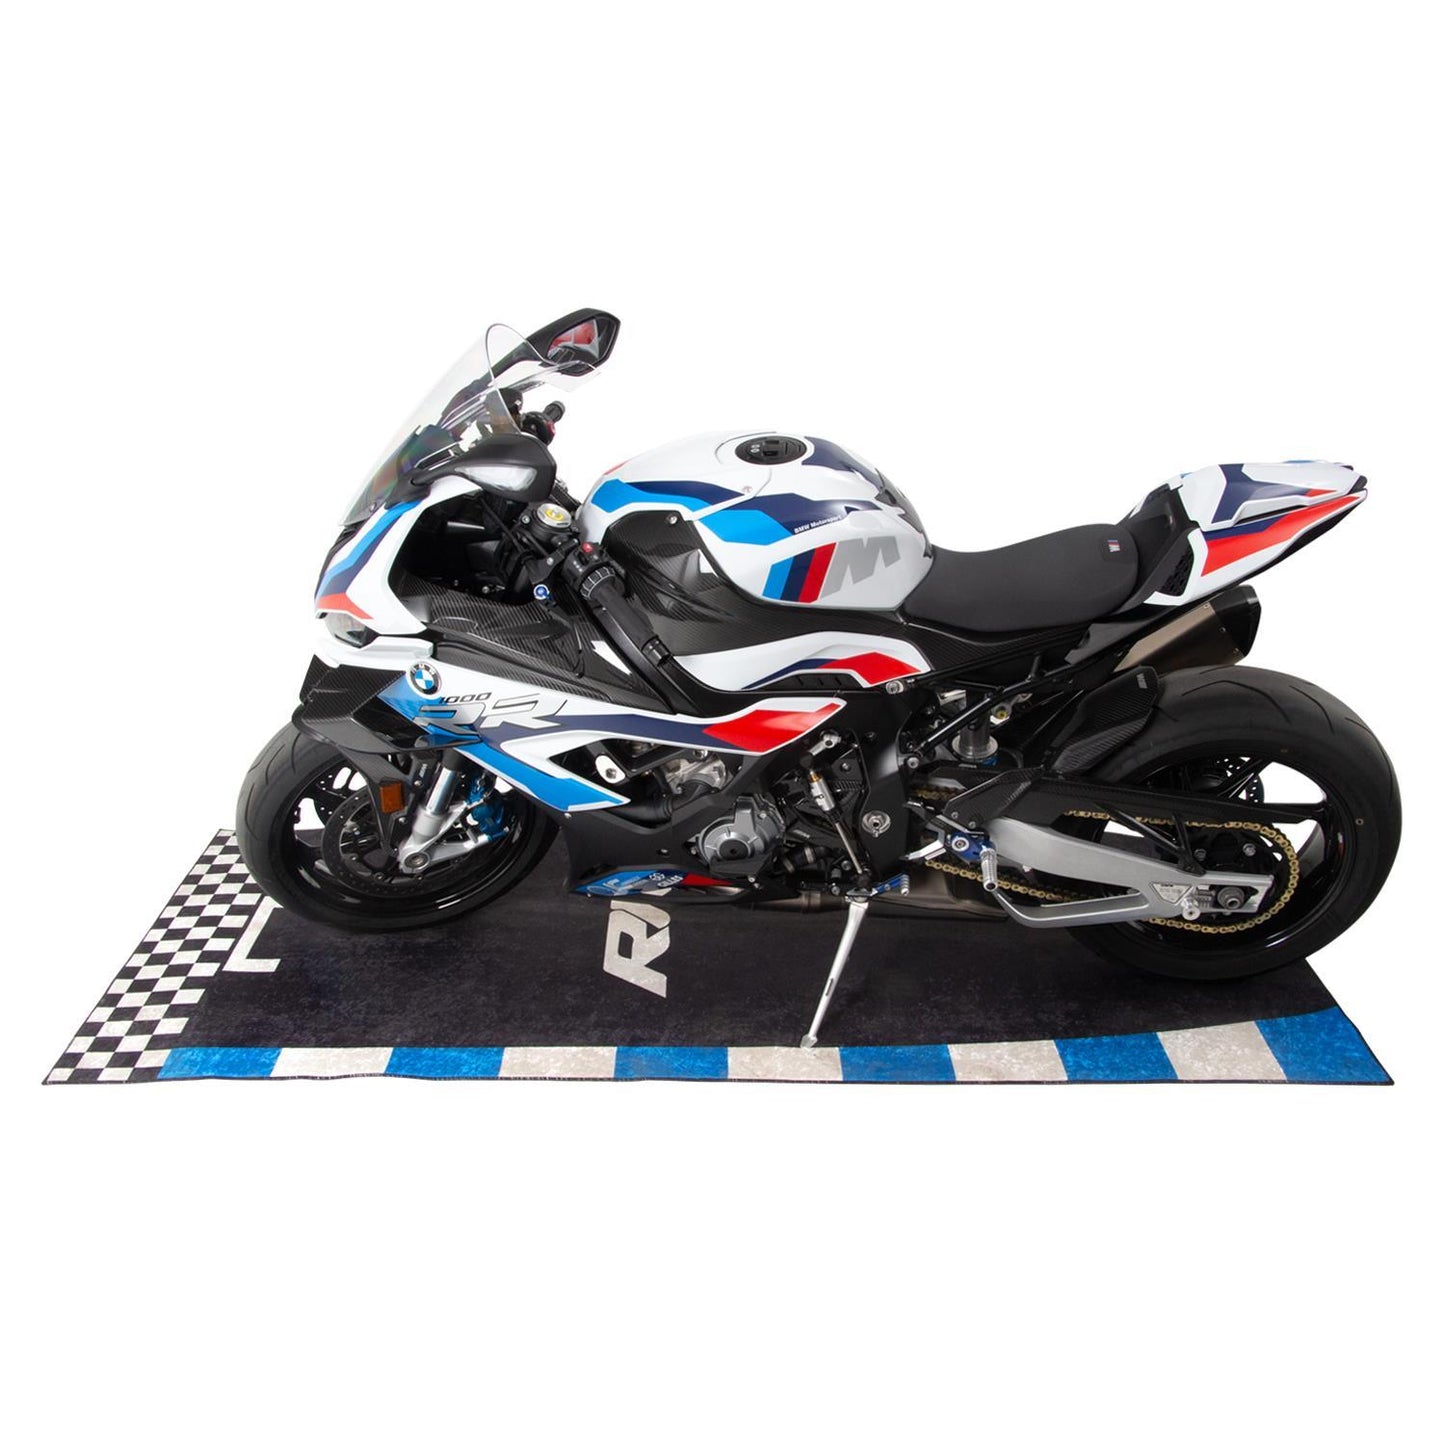 Motorrad RR Motorcycle Workshop Mat Garage Floor Rug 220x100cm